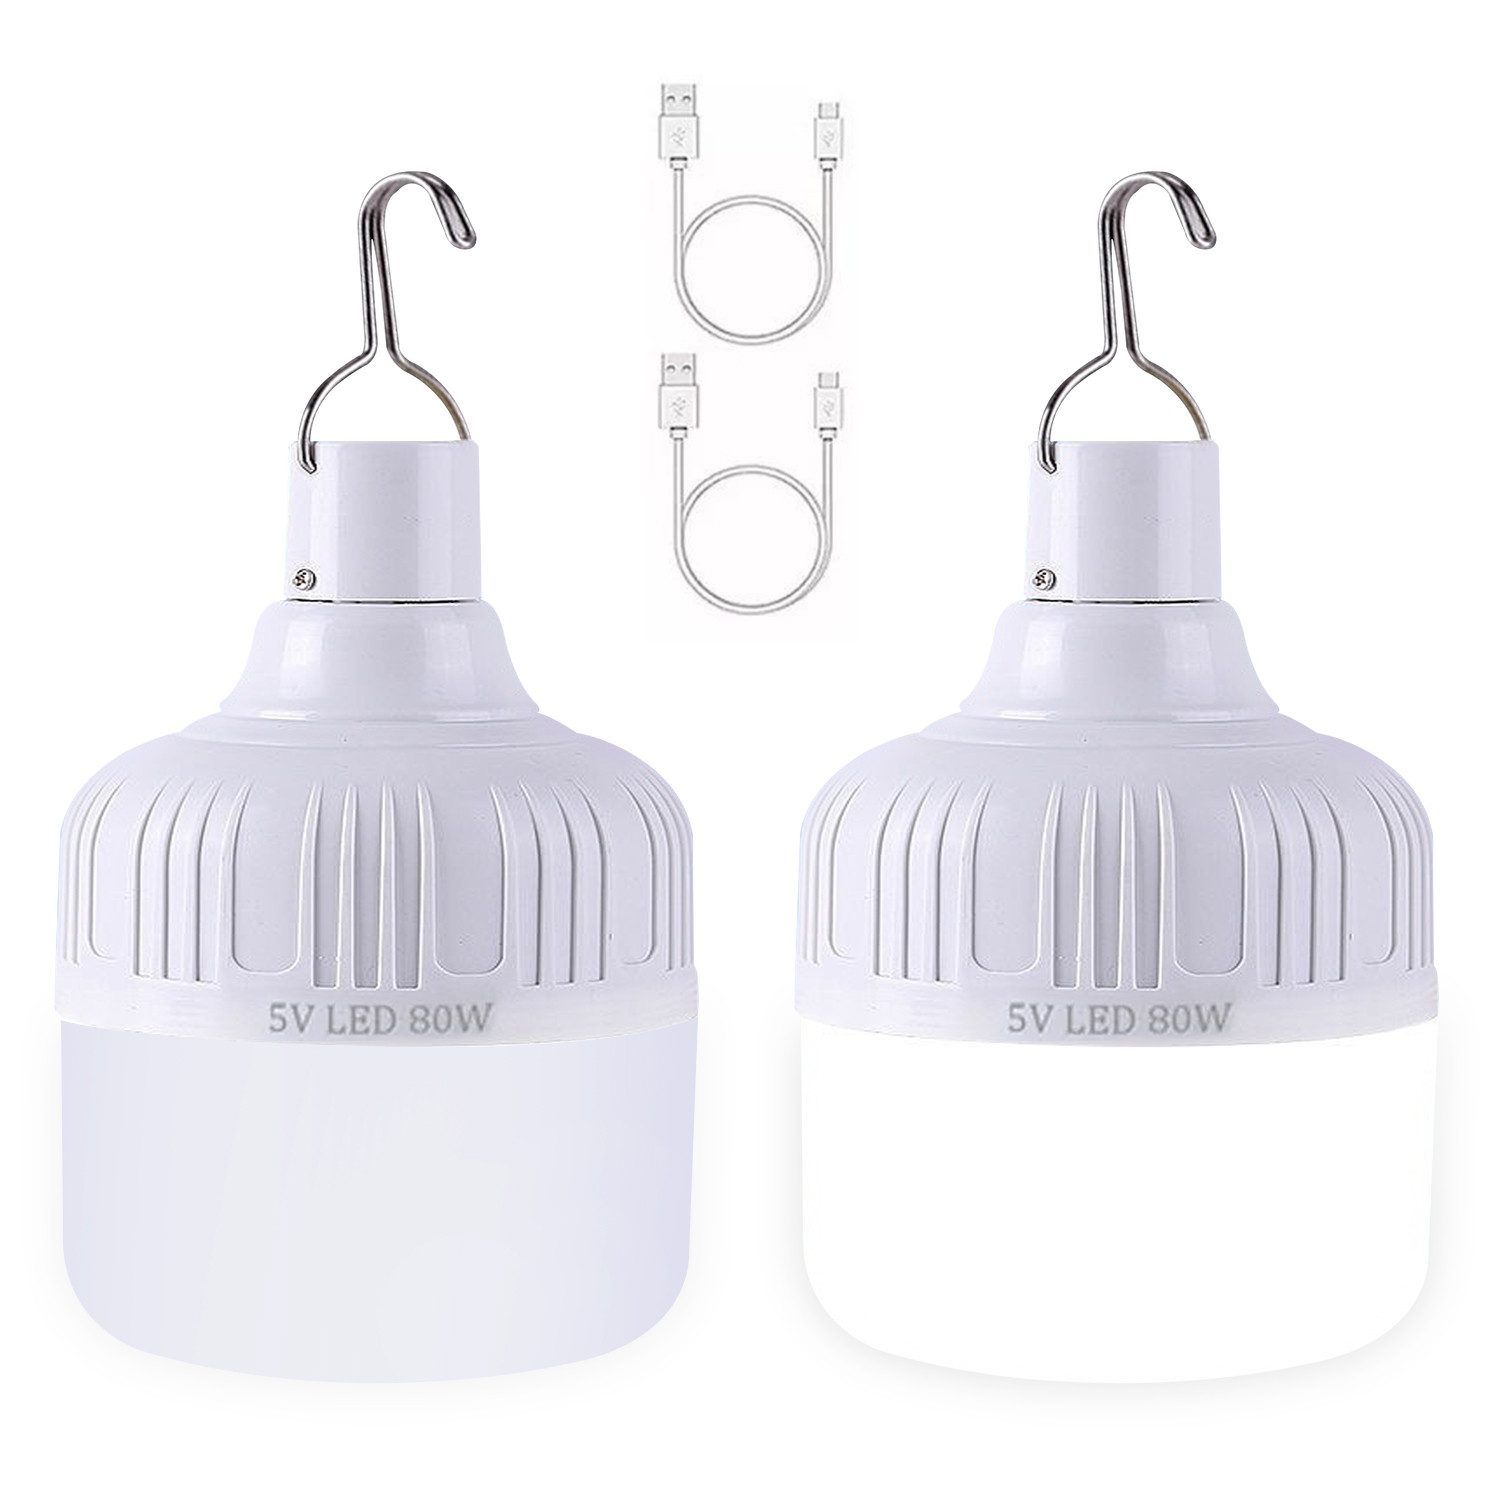 Jioson LED-Leuchtmittel LED Laterne Led Campinglampe, E27, weißes Licht, Wiederaufladbar, kann separat verwendet werden